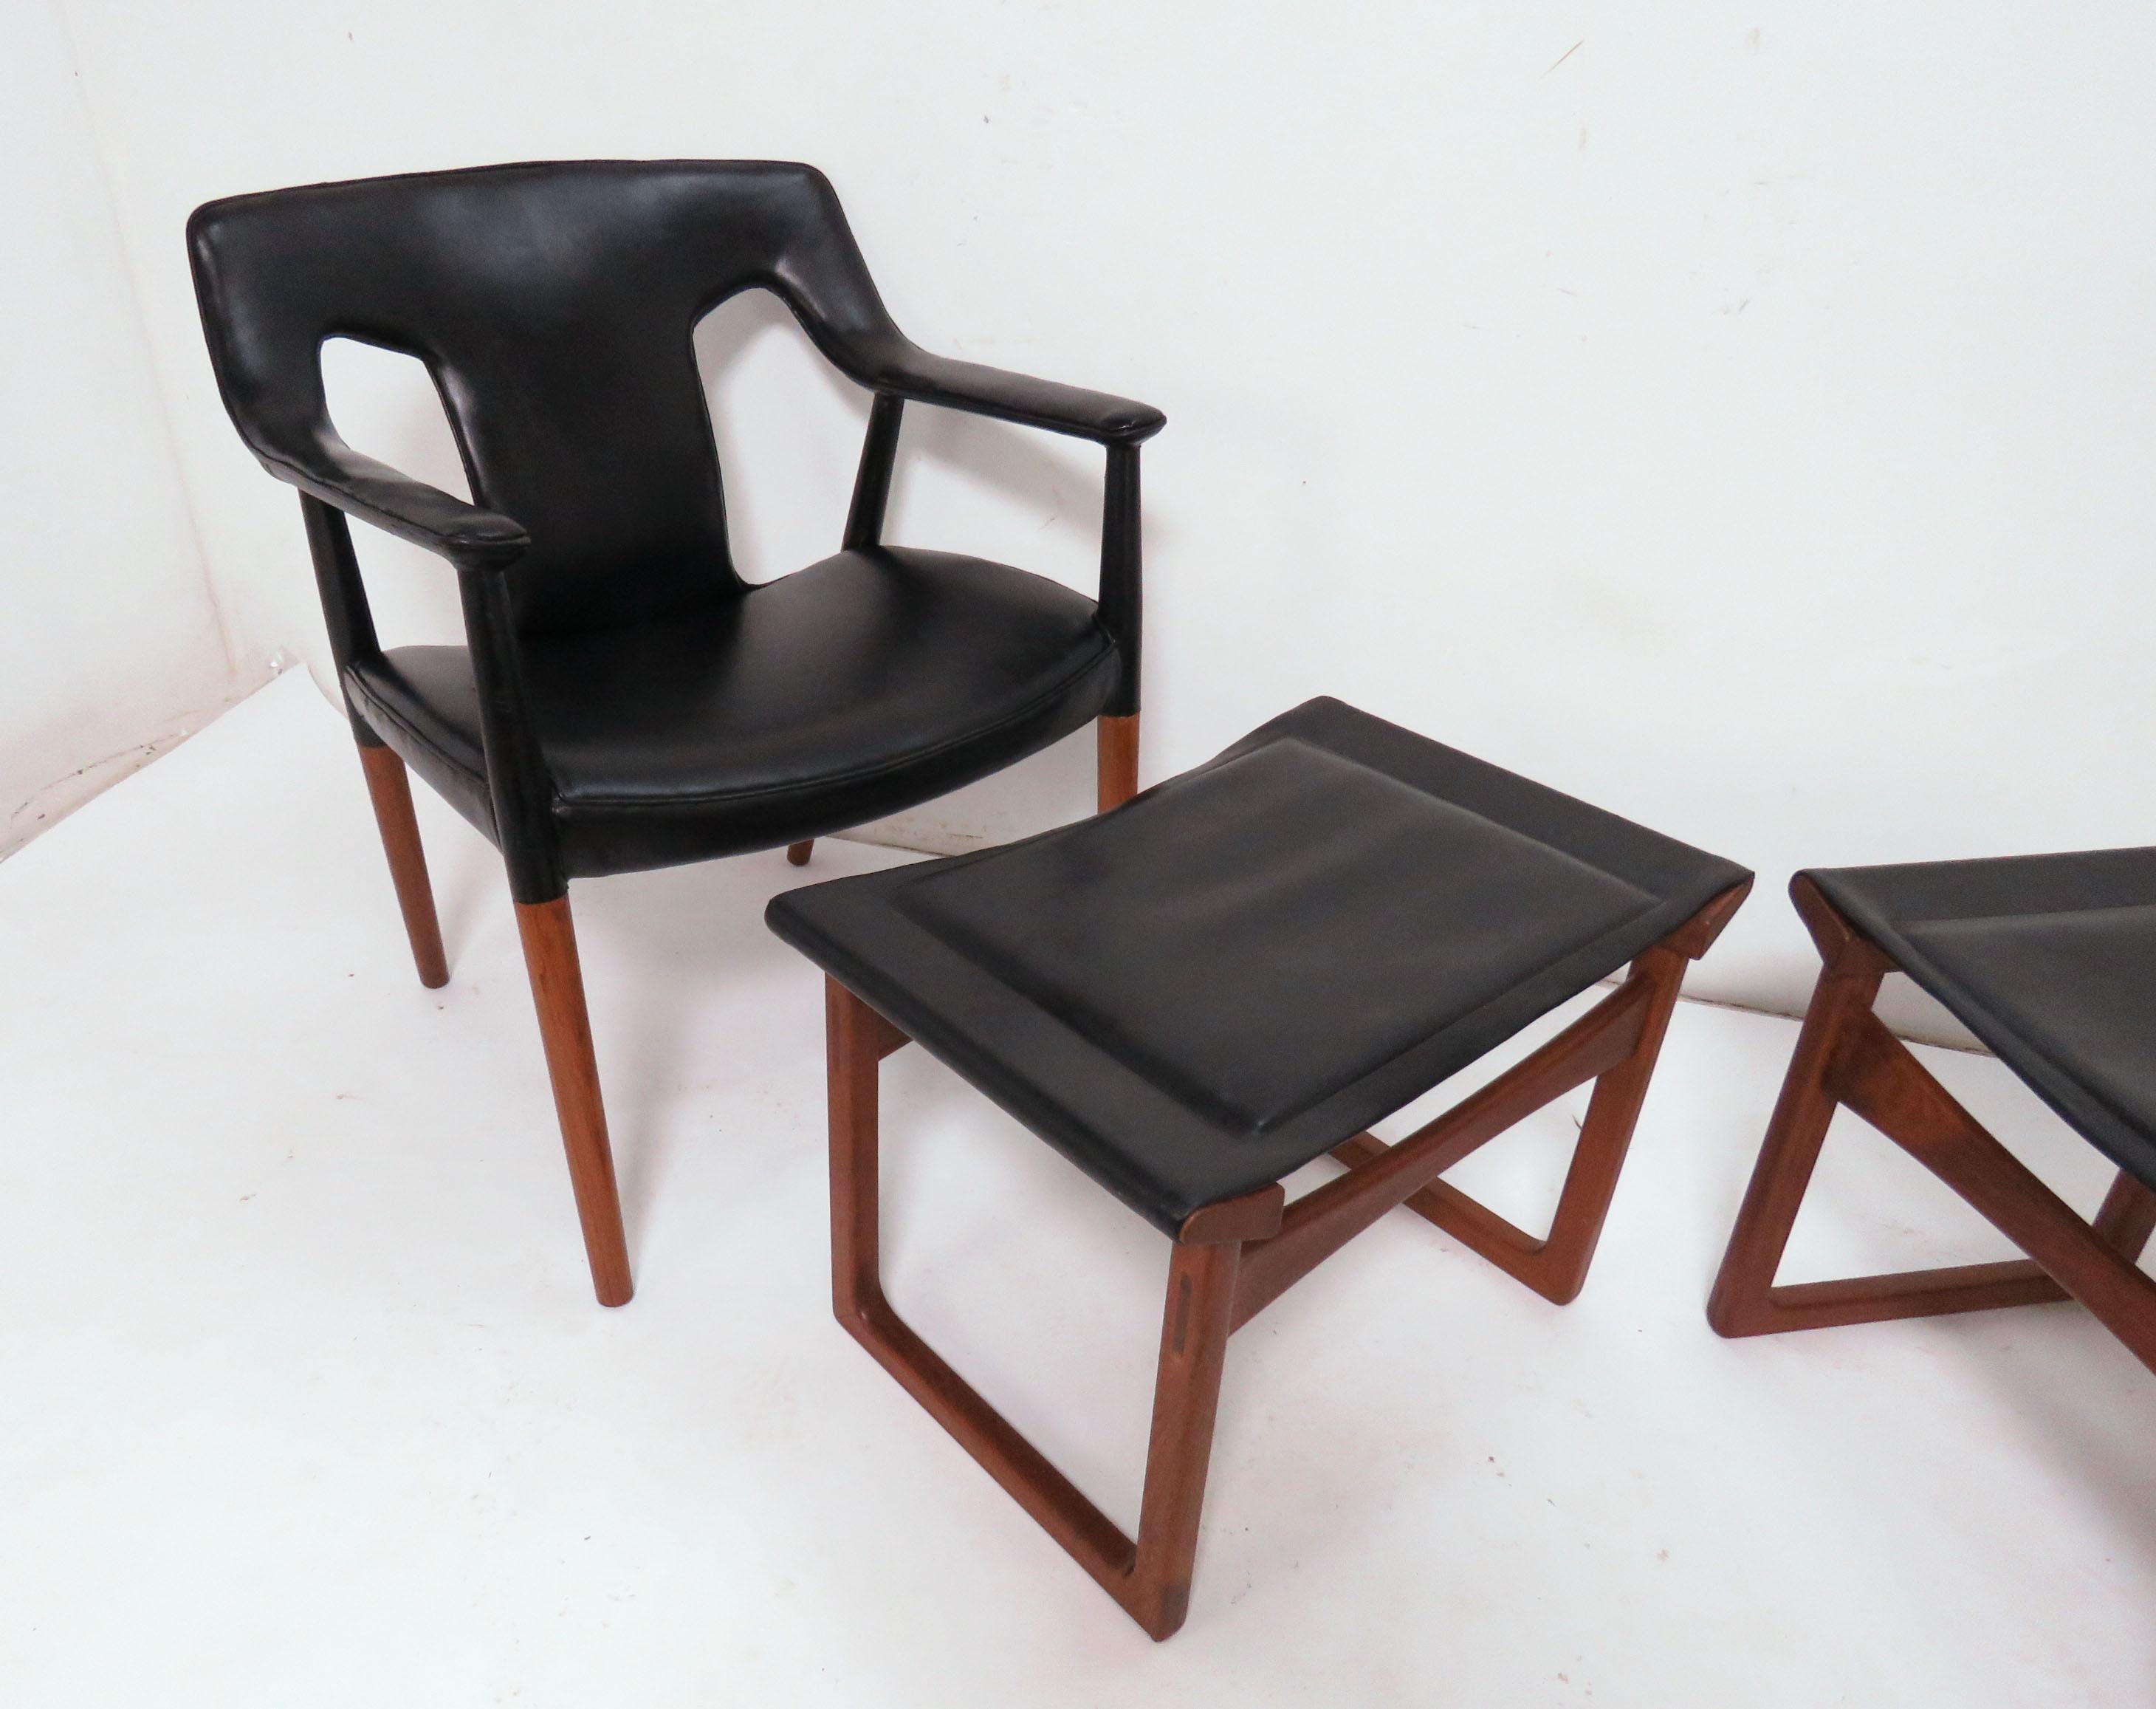 Fauteuil de salon et pouf/ottoman danois en teck, vers le milieu des années 1950. Conçu par Ejner Larsen et Aksel Bender Madsen et fabriqué par Ludvig Pontoppidan. Remarque : chaque ensemble chaise et ottoman est vendu séparément (c'est-à-dire que